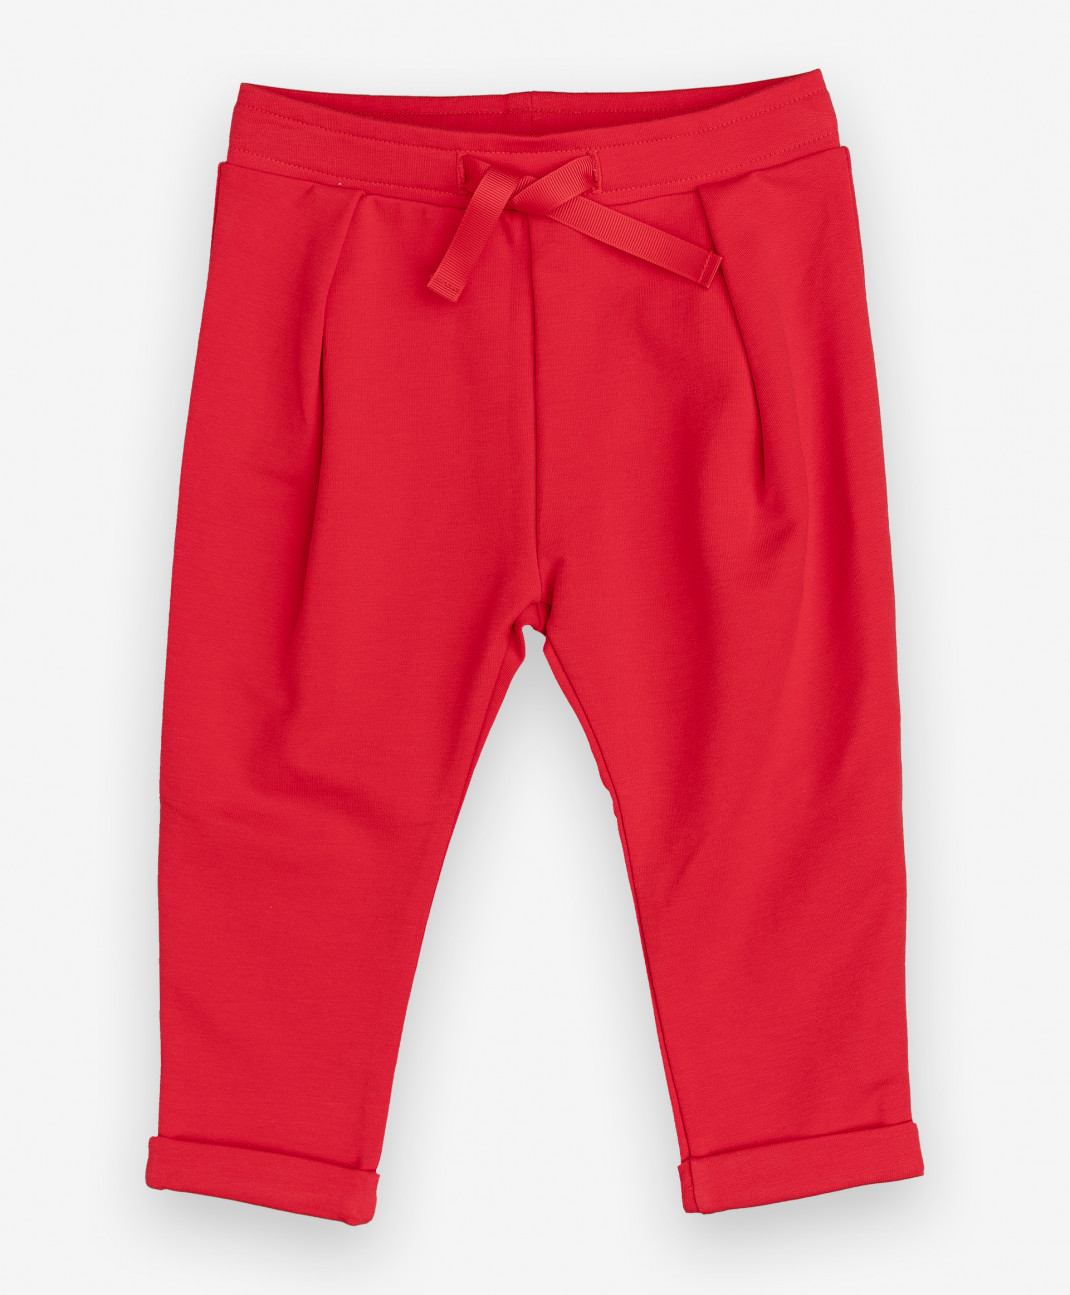 Фото - Gulliver Baby Красные брюки Gulliver брюки gulliver baby 12033bbc5601 размер 80 черный